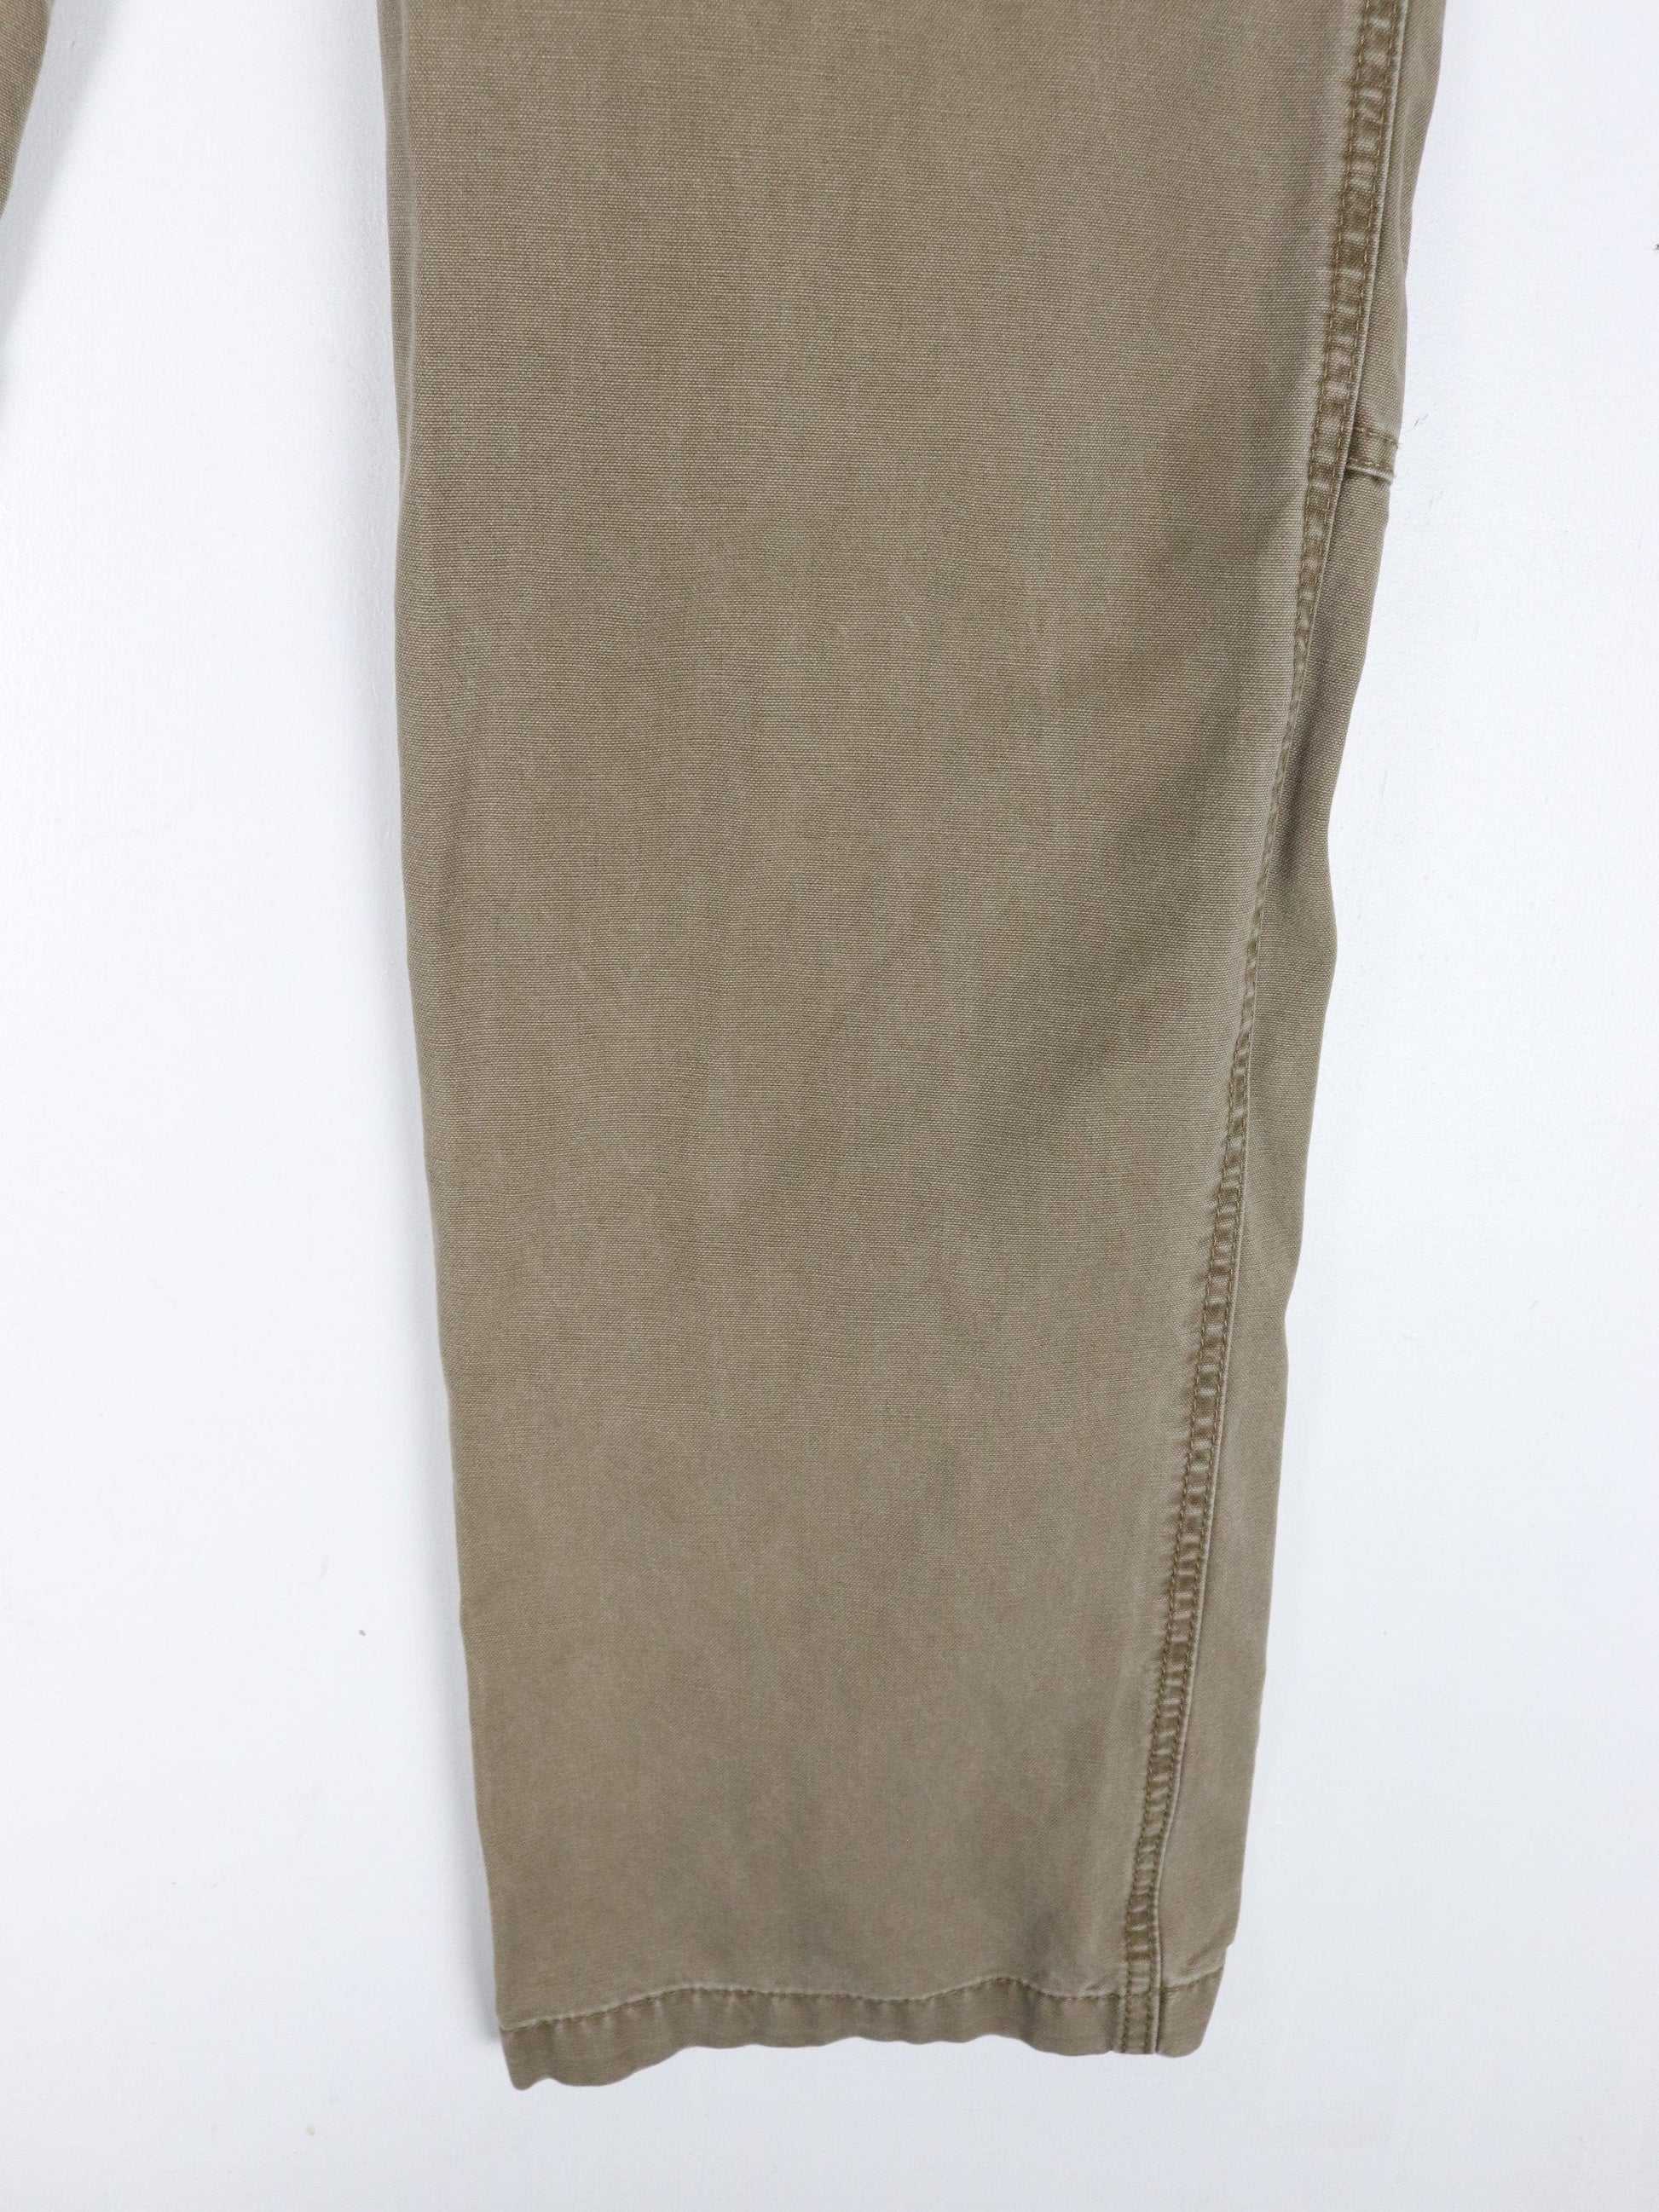 L.L. Bean Pants Vintage L.L. Bean Pants Mens 36 x 32 Brown Standard Fit